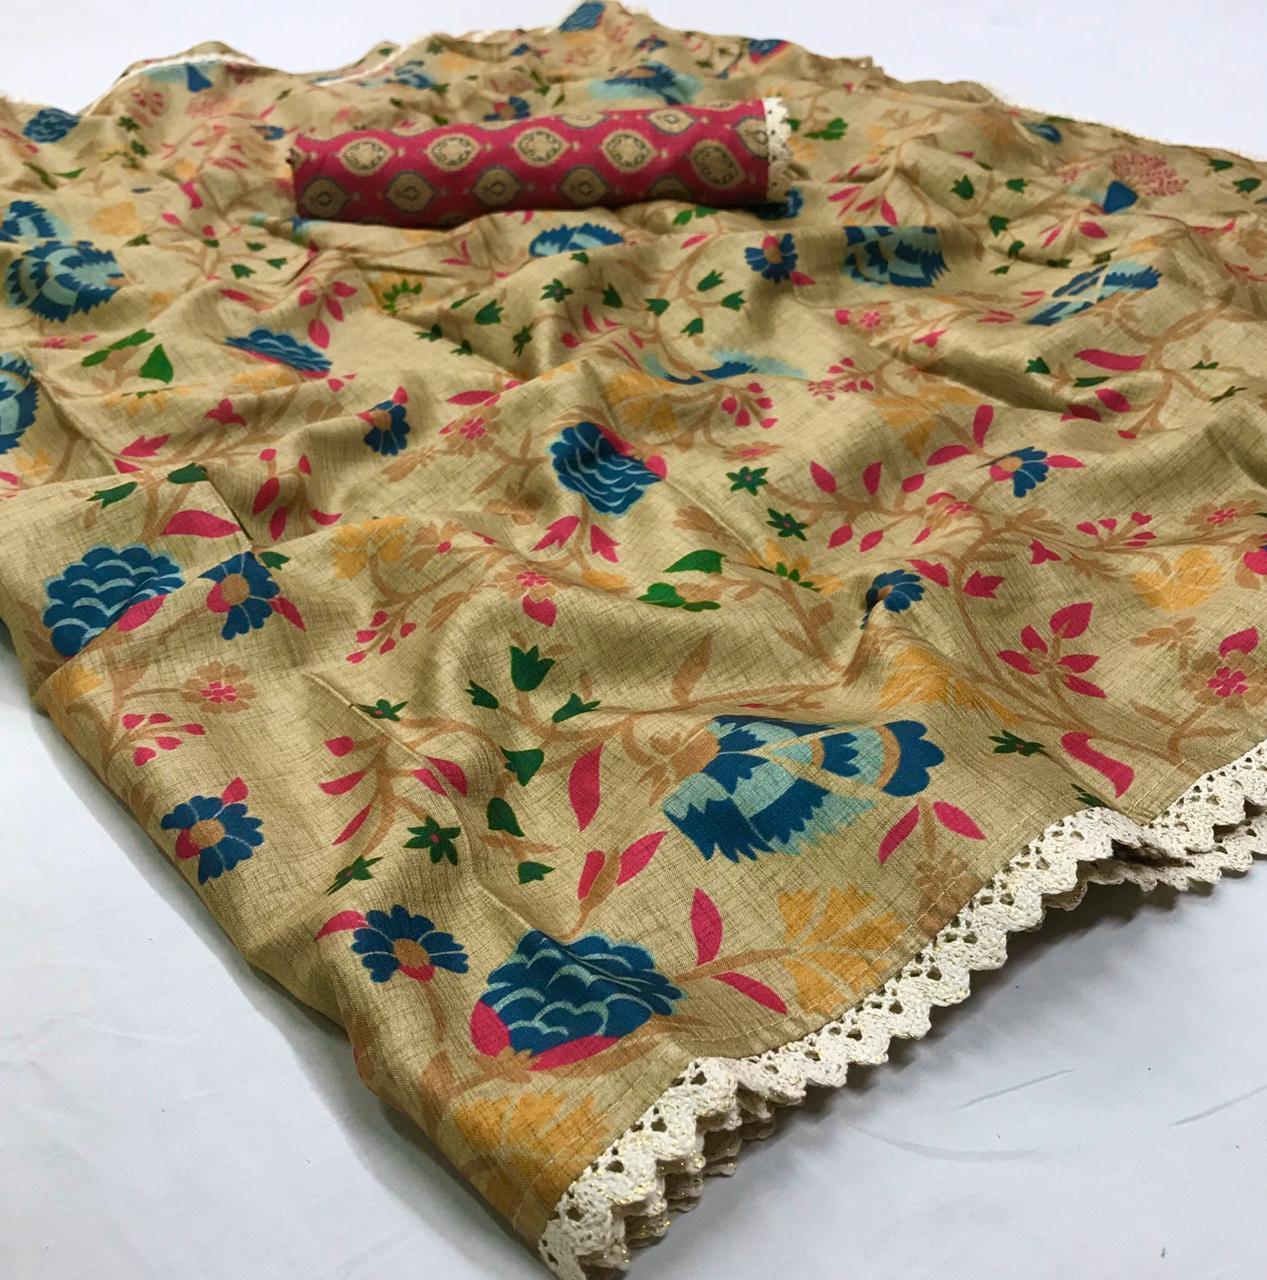 Designer Beige Manipuri Silk Printed Saree VM02-Anvi Creations-Manipuri Silk saree,Printed Silk Saree